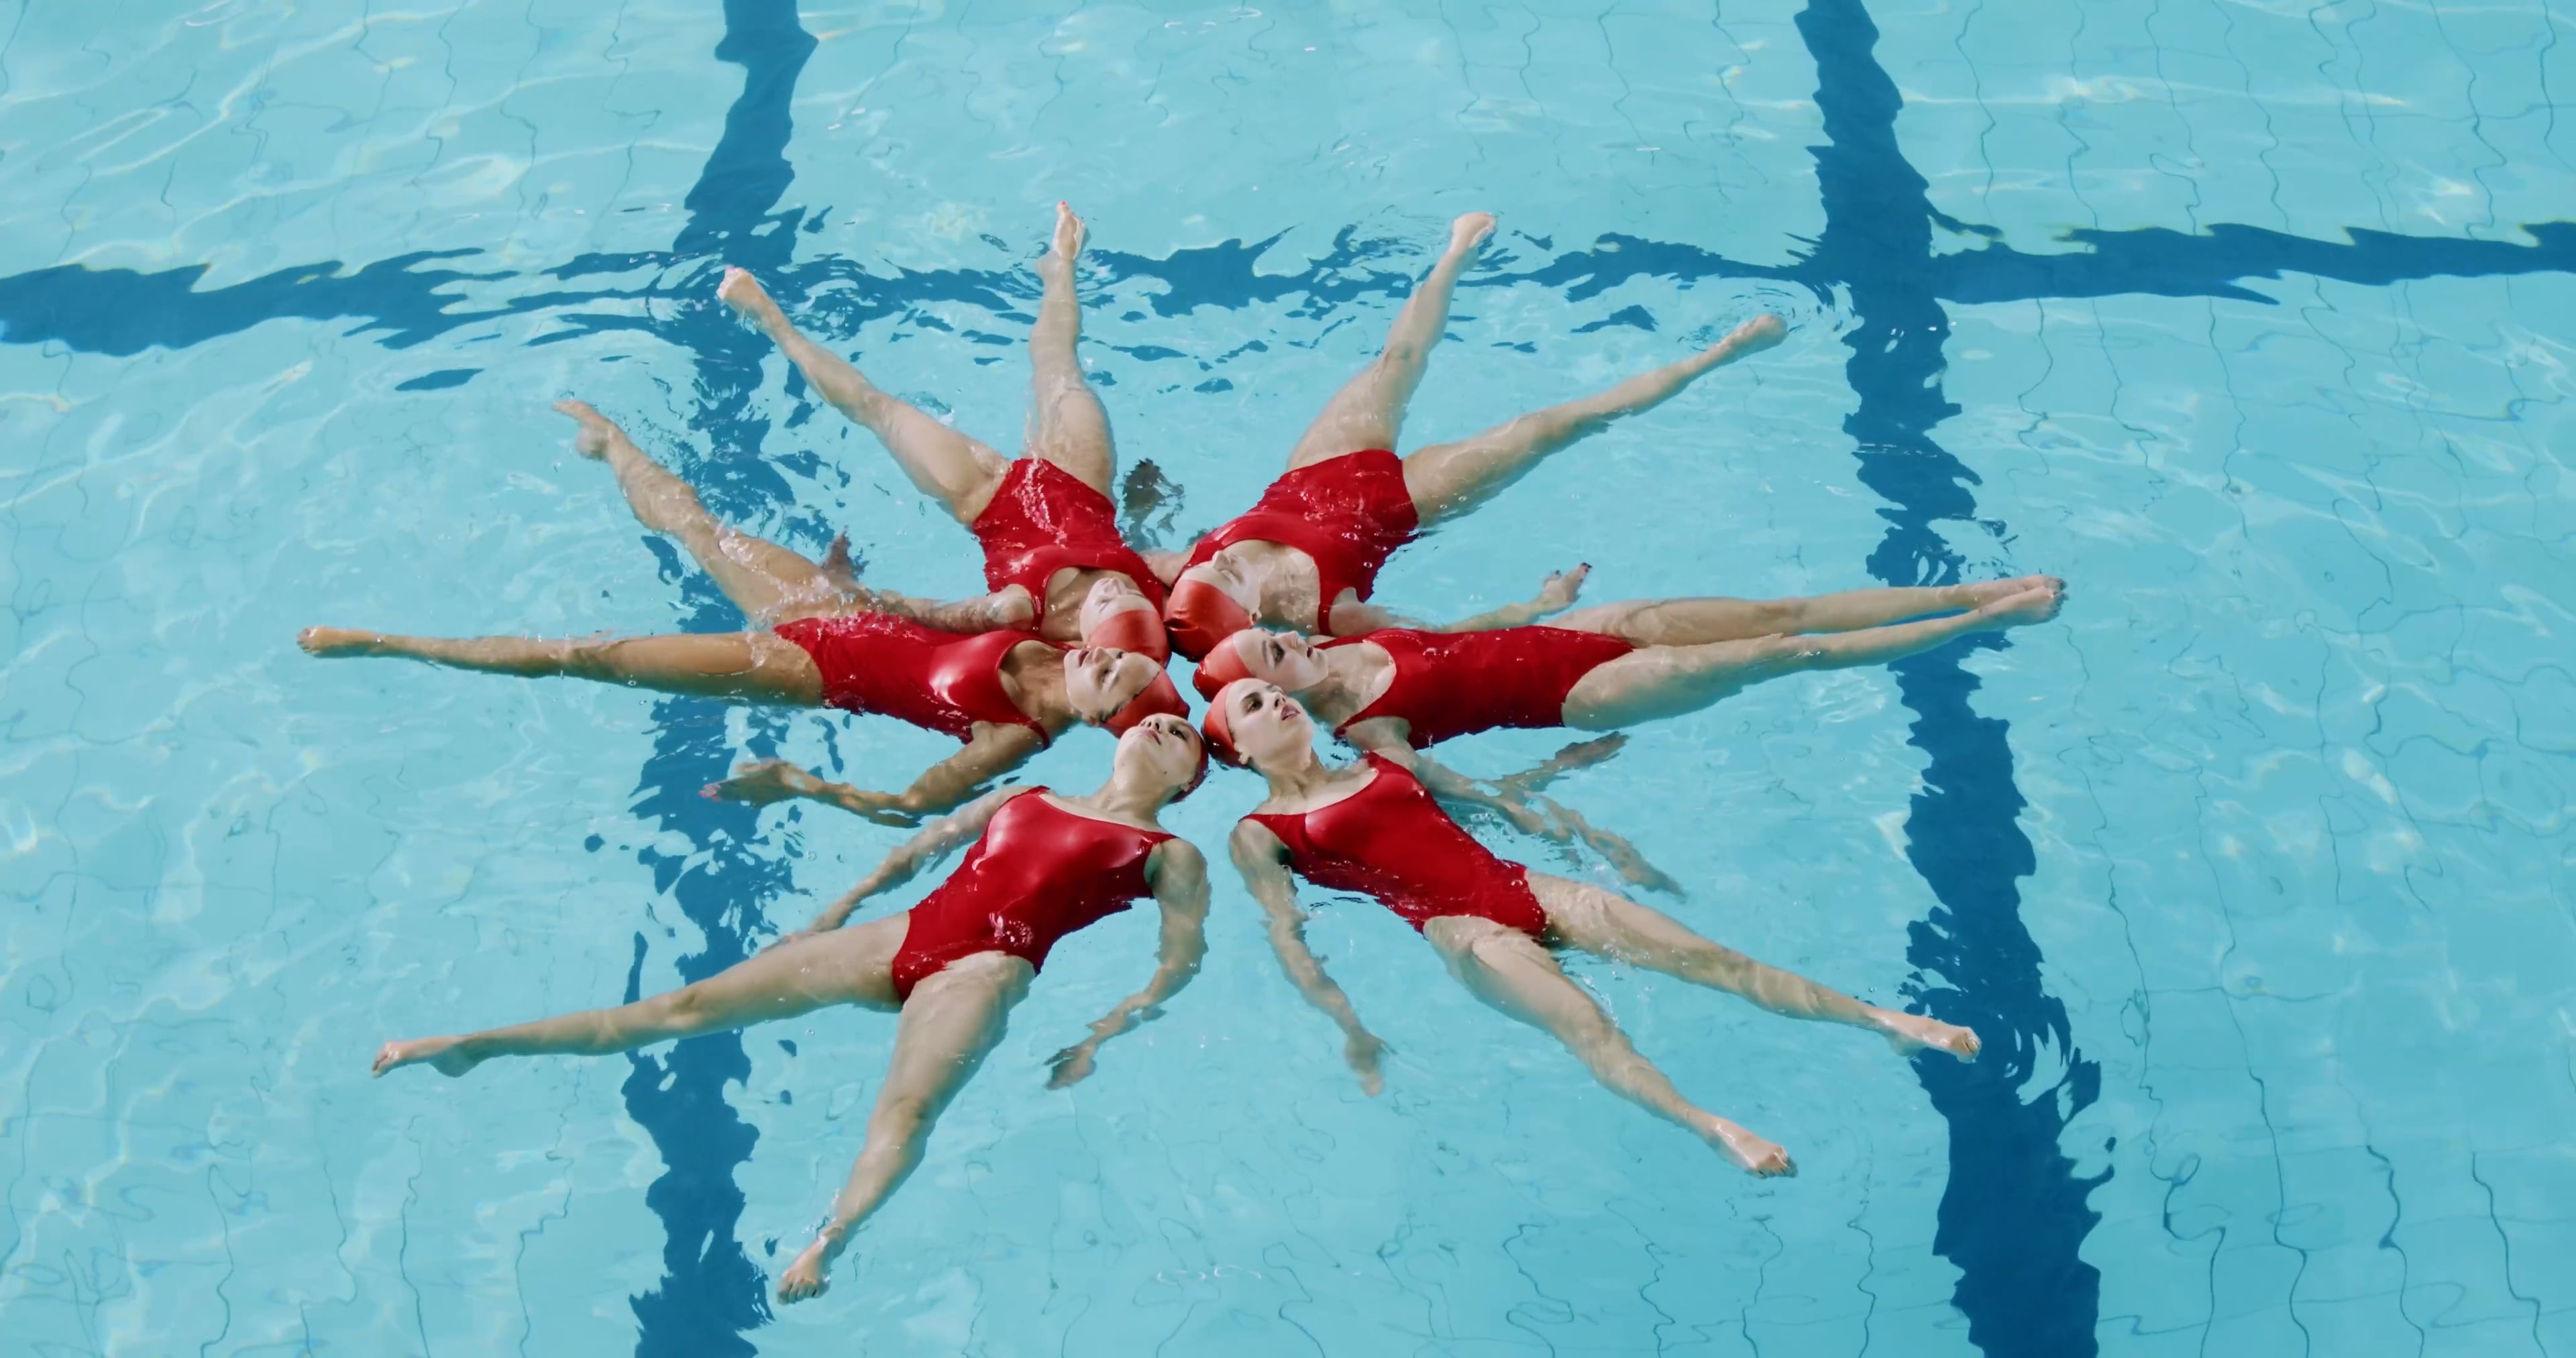 Elegant water ballet, Synchronized grace, Female swimmers, Fluid motion, 3840x2030 HD Desktop